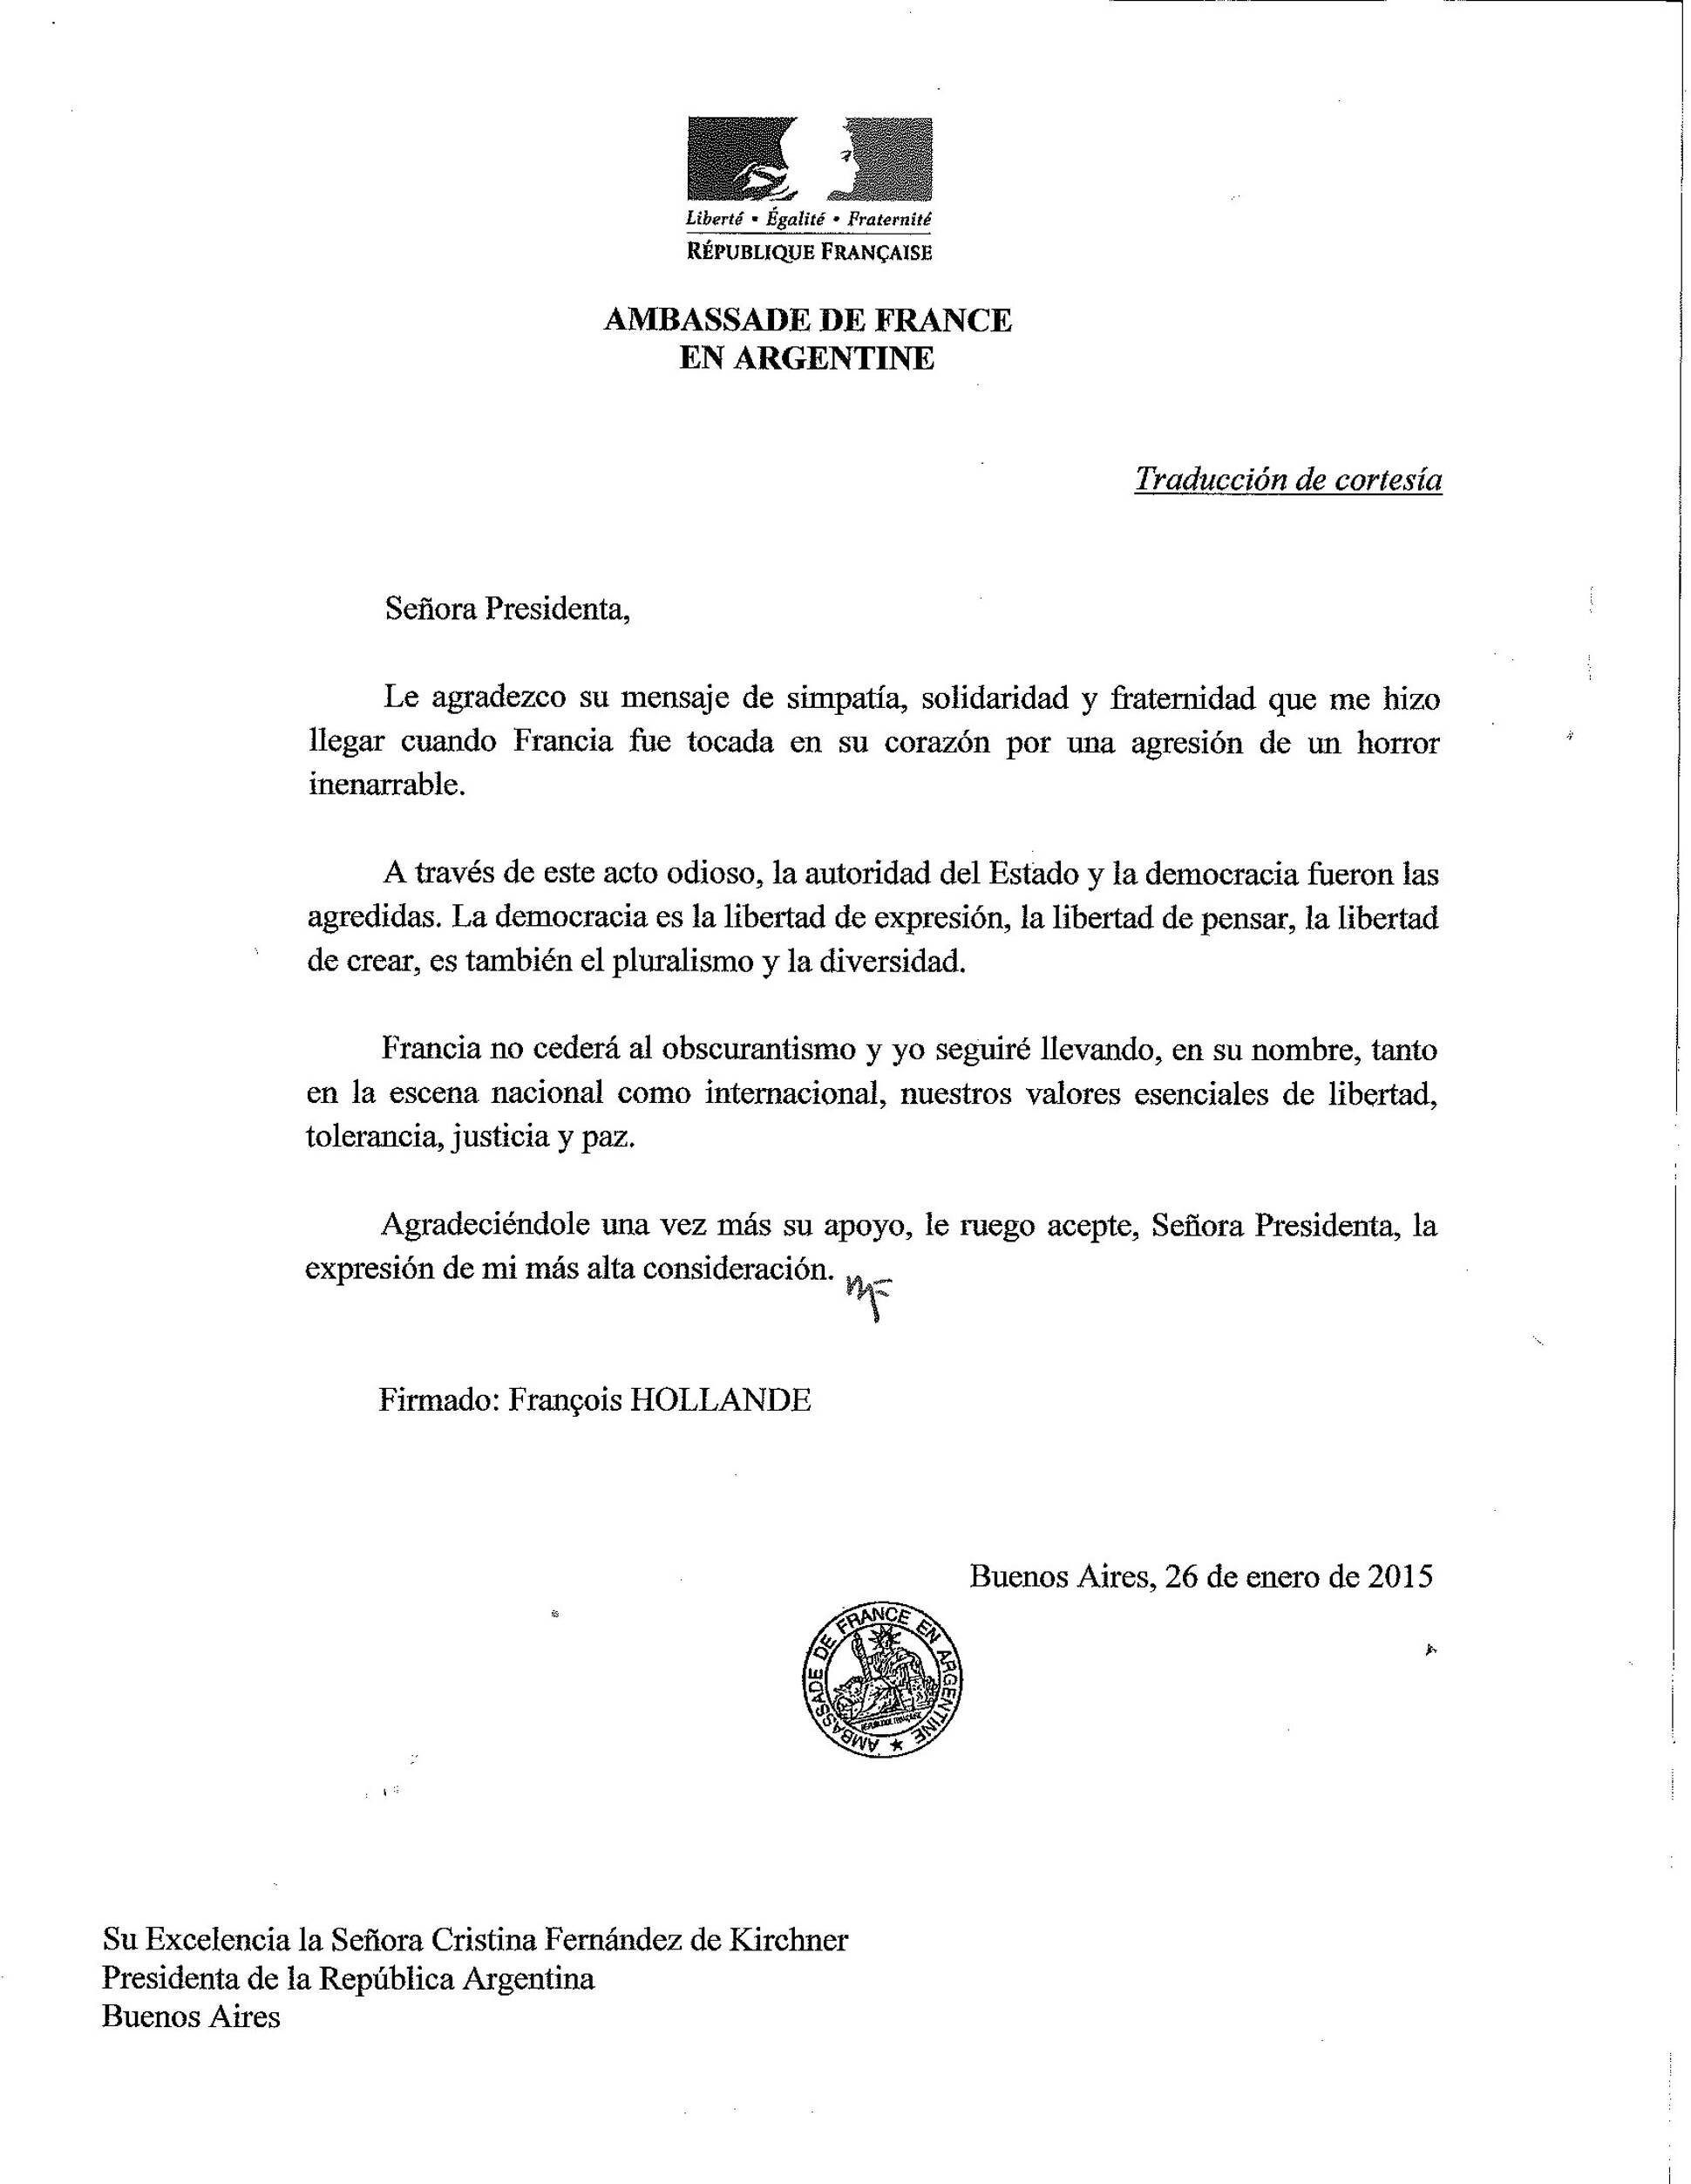 Imagen de la carta enviada por el presidente Francoise Hollande